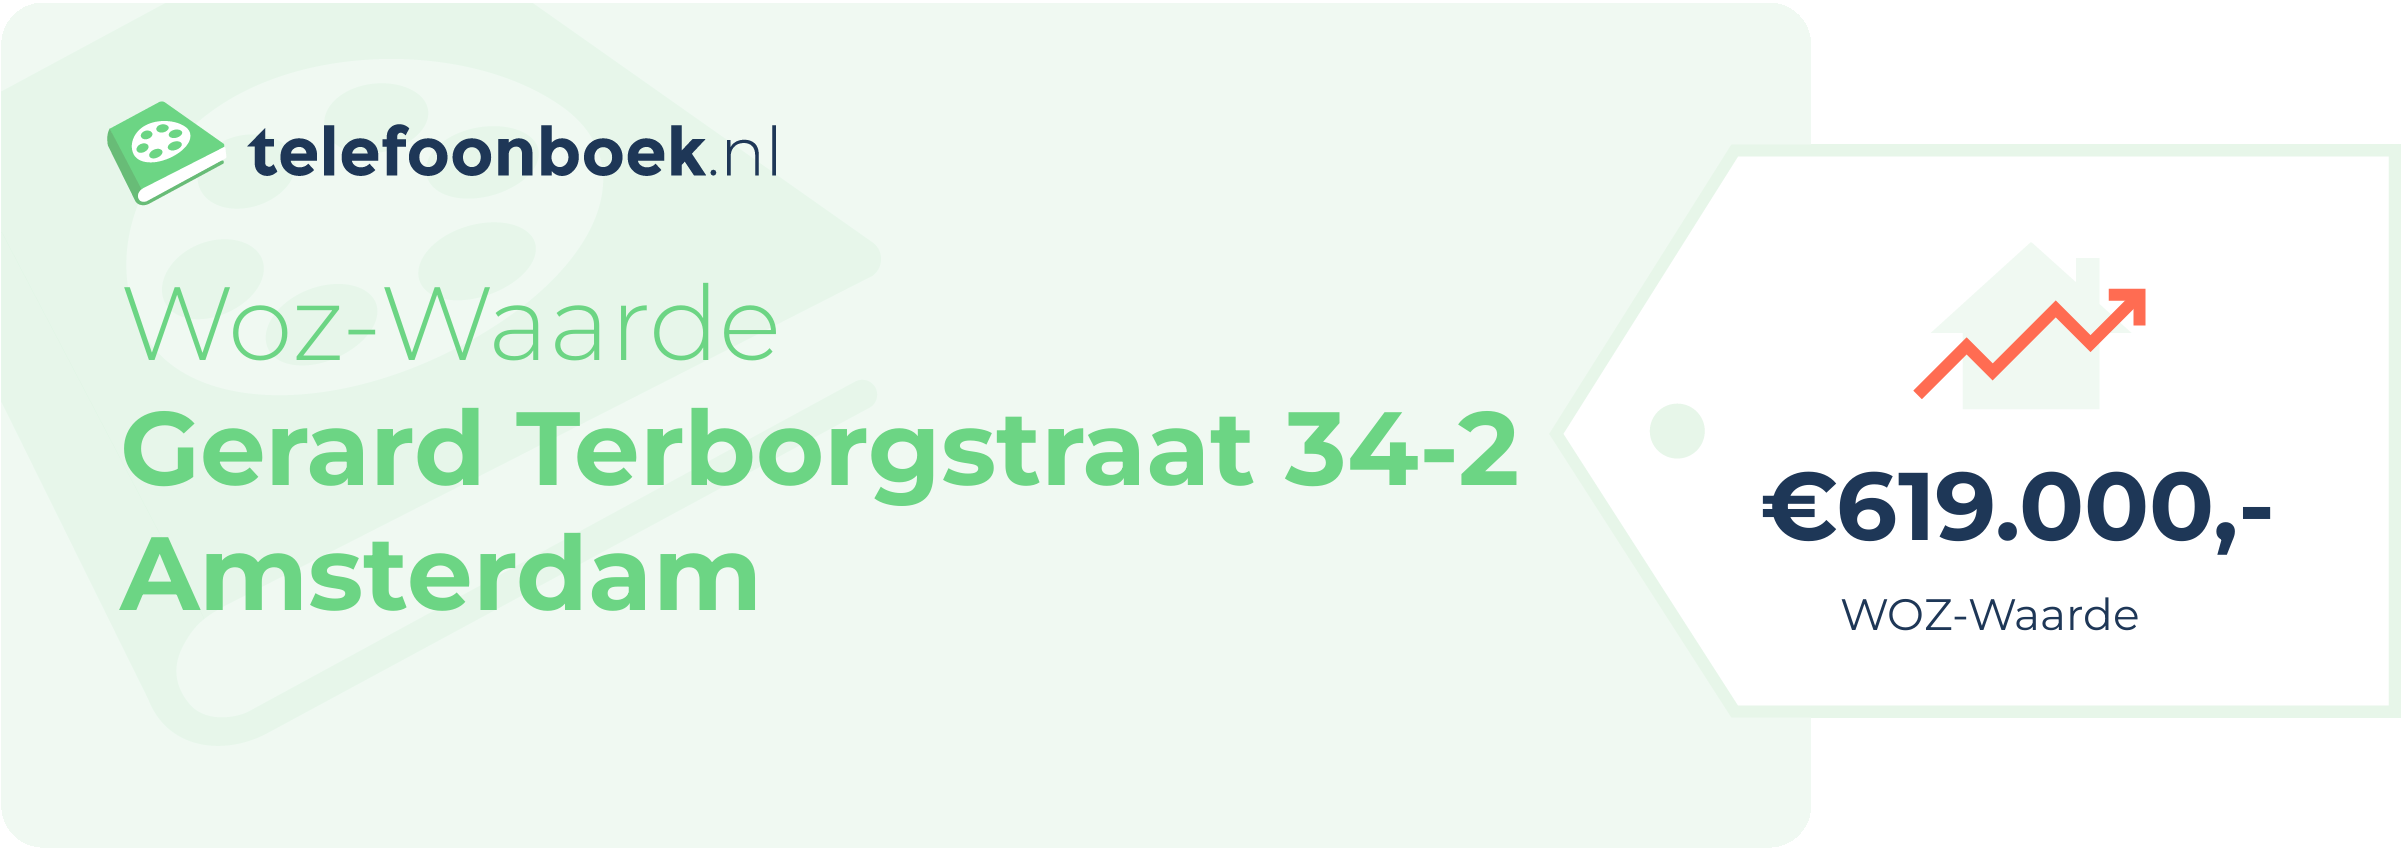 WOZ-waarde Gerard Terborgstraat 34-2 Amsterdam